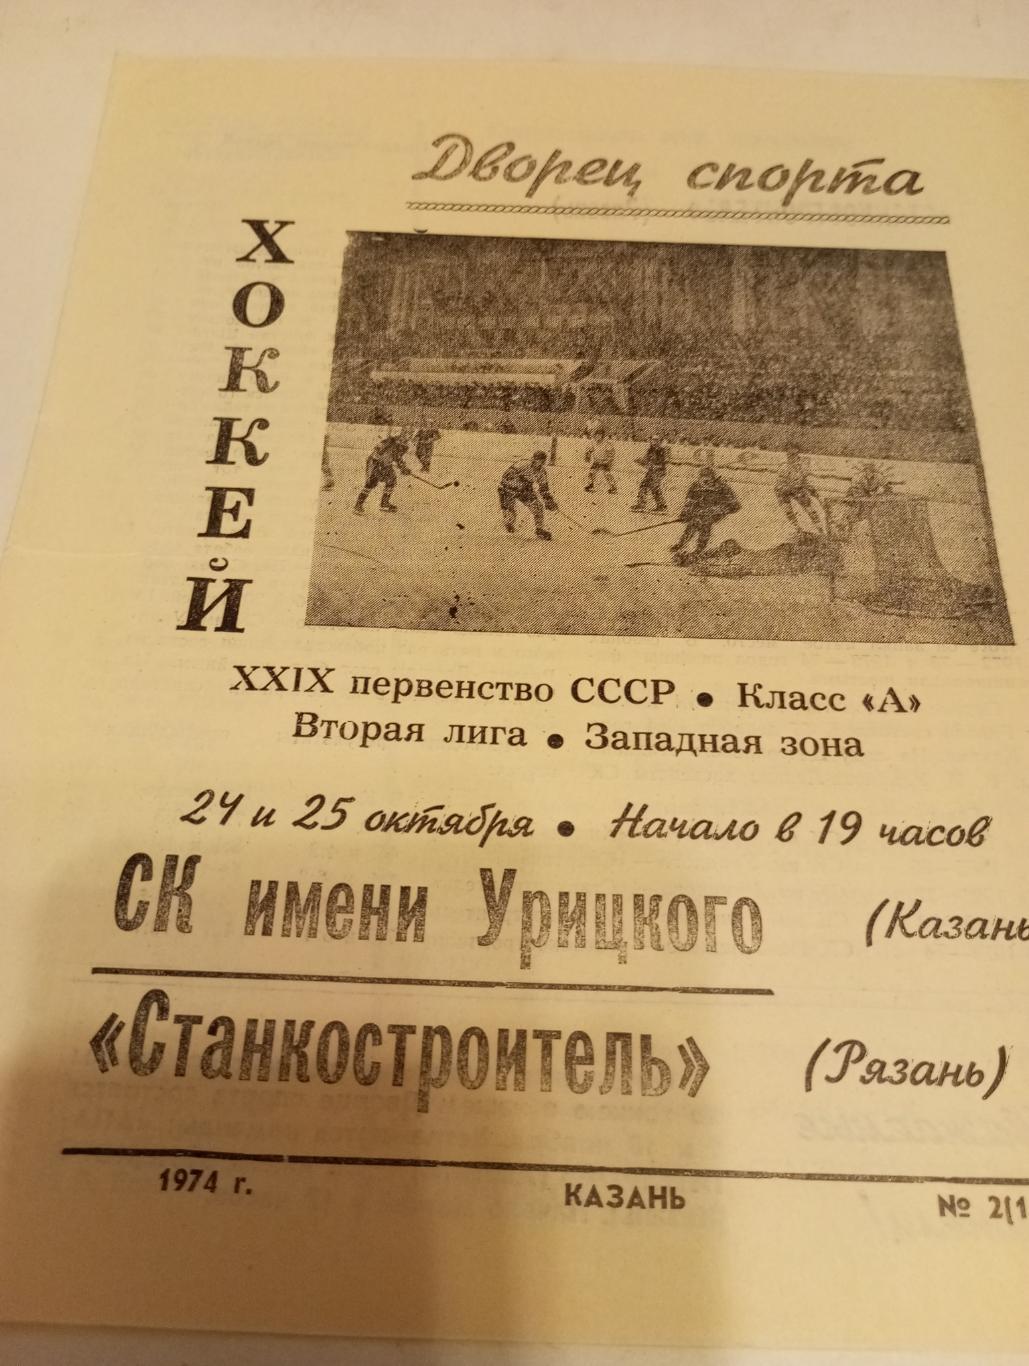 СК им. Урицкого (Казань) - Станкостроитель., (Рязань). 24/25.10.1974.